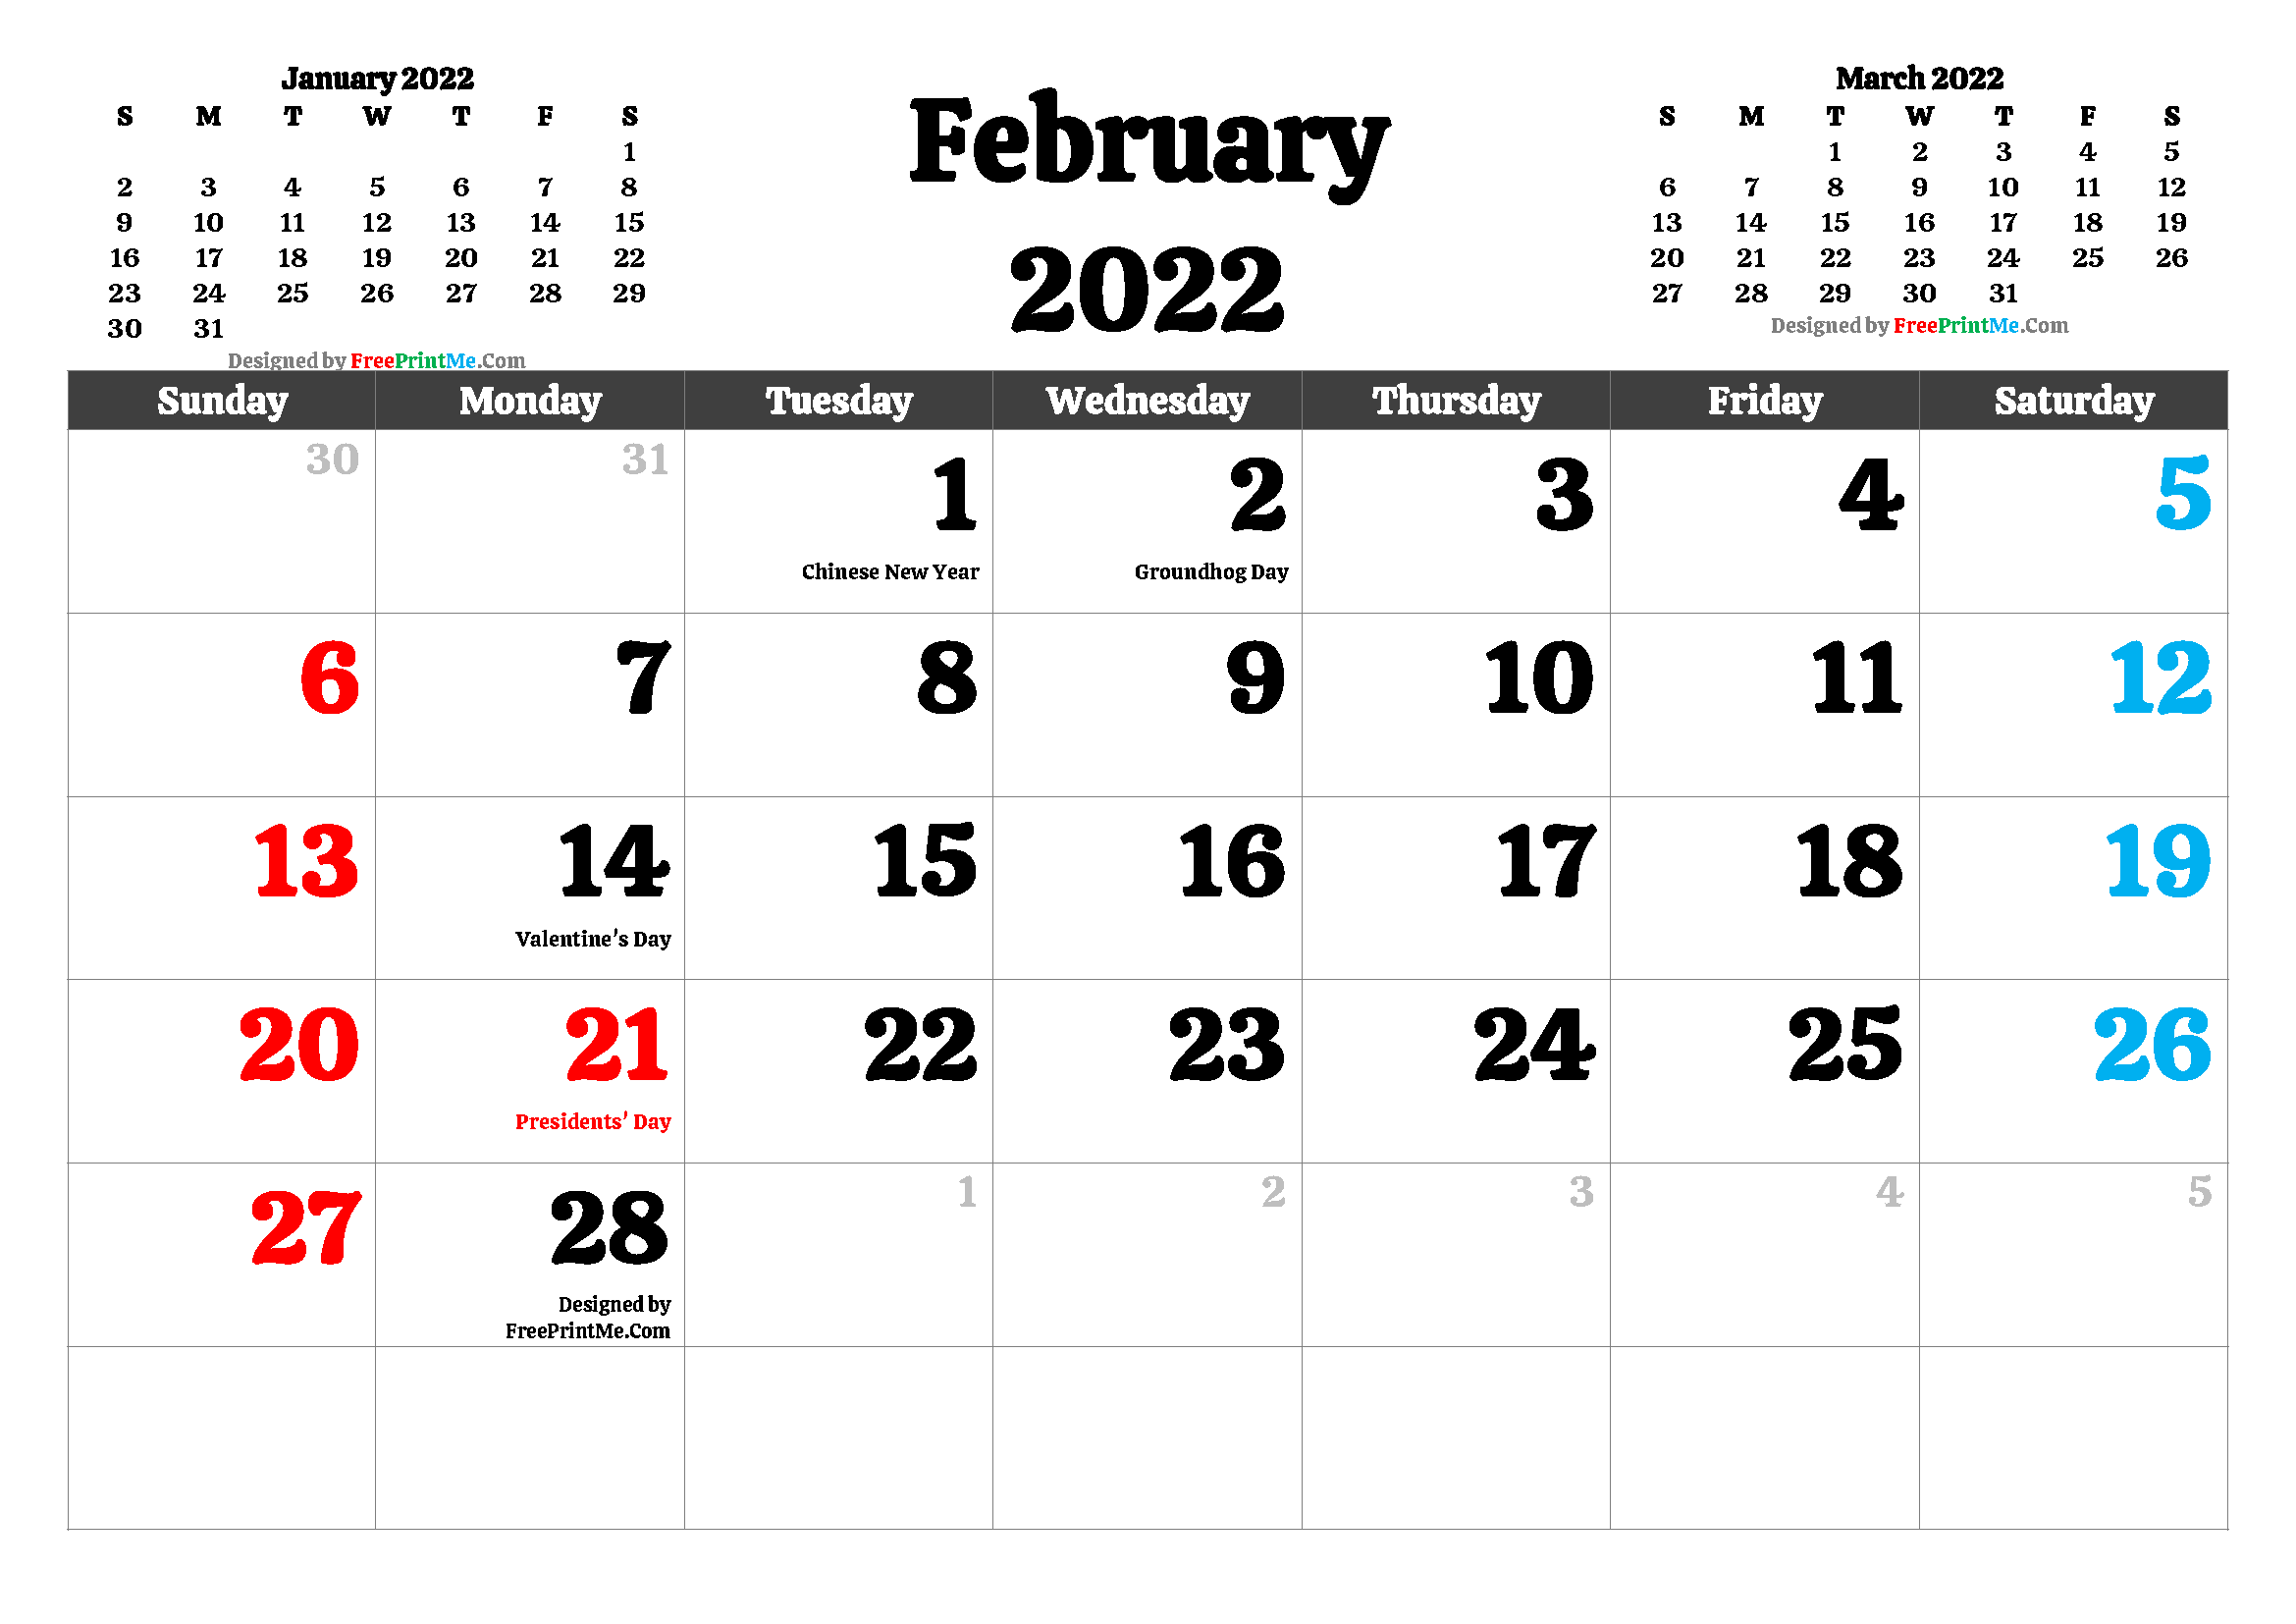 February Calendar 2022 Free Printable February 2022 Calendar Pdf And Image